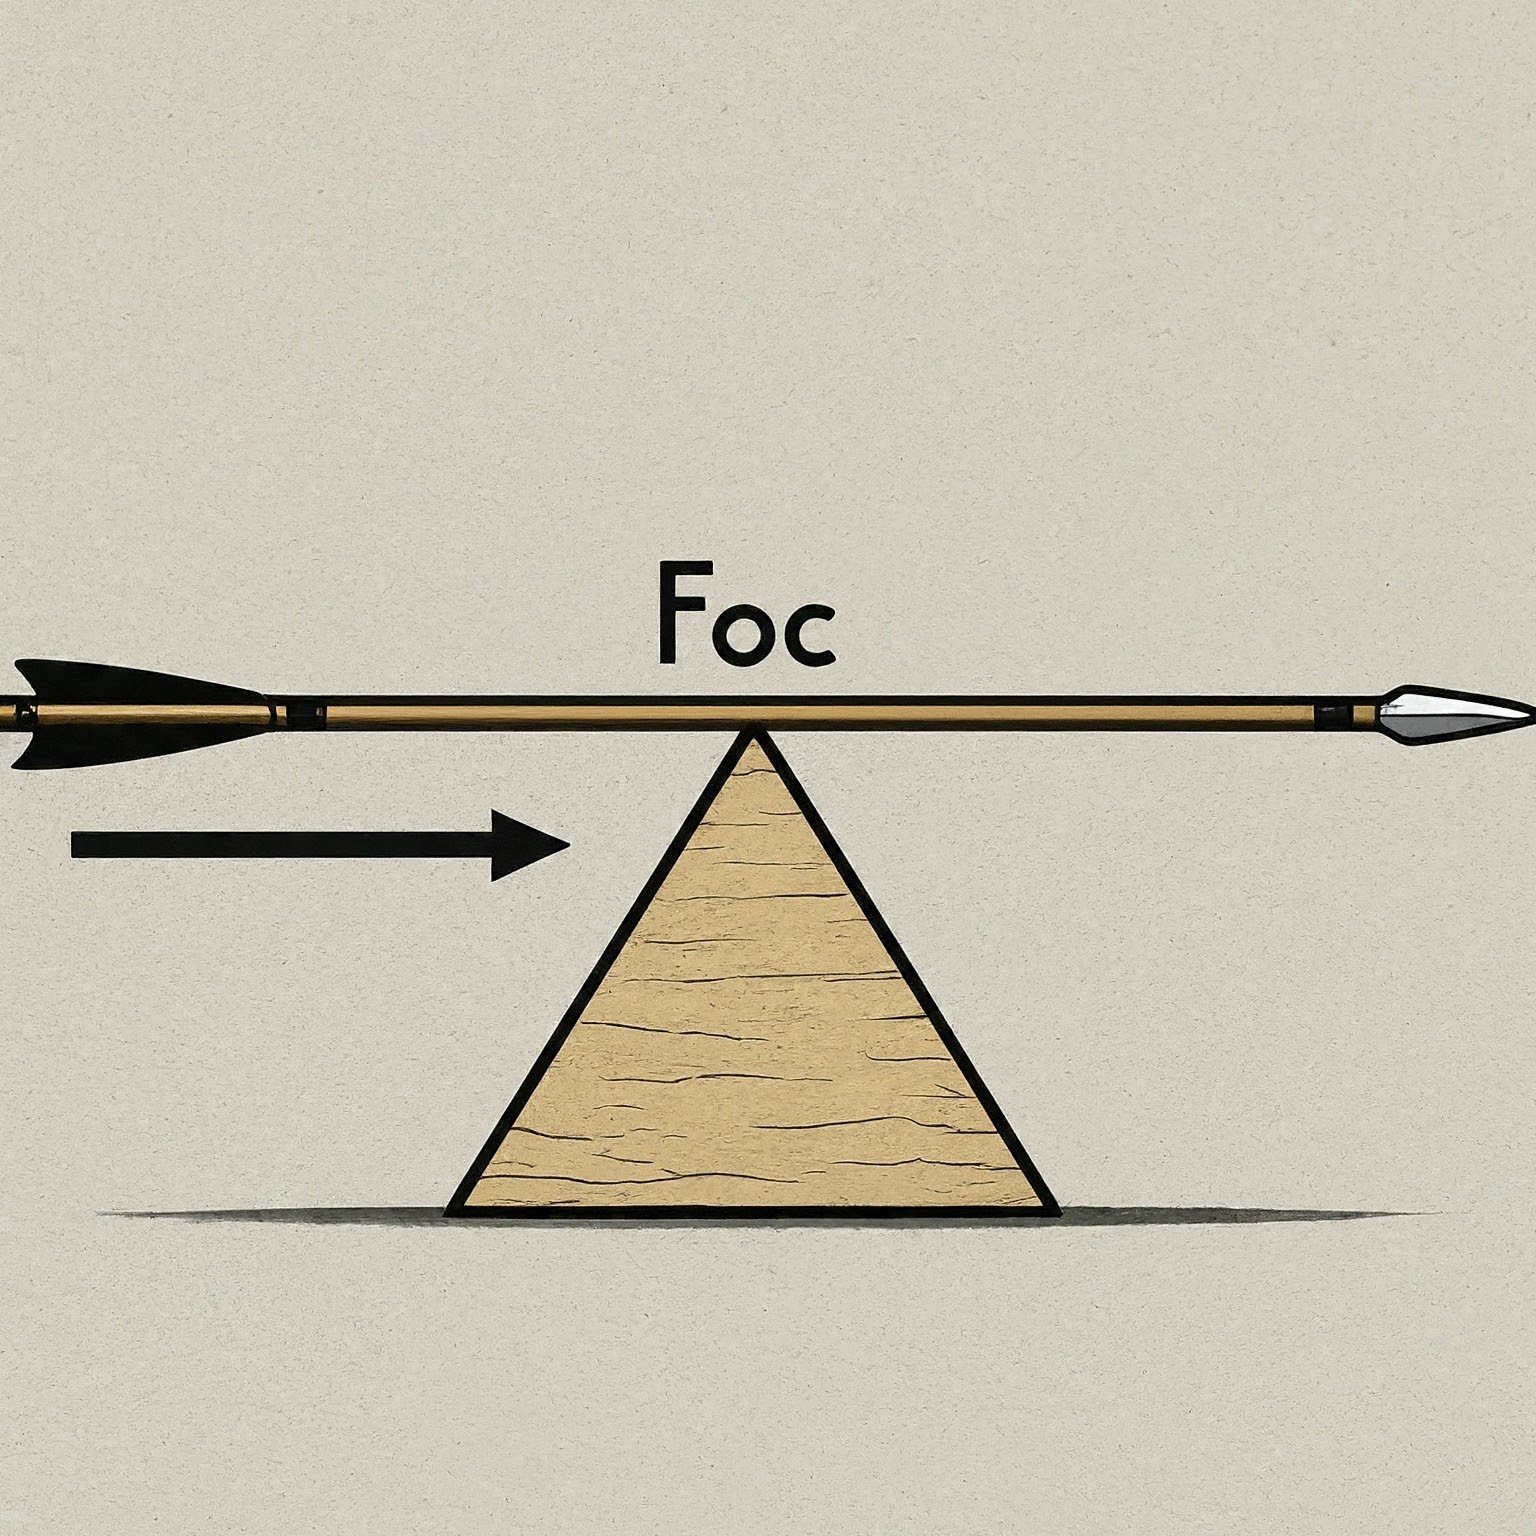 Formula for Arrow FOC Calculations